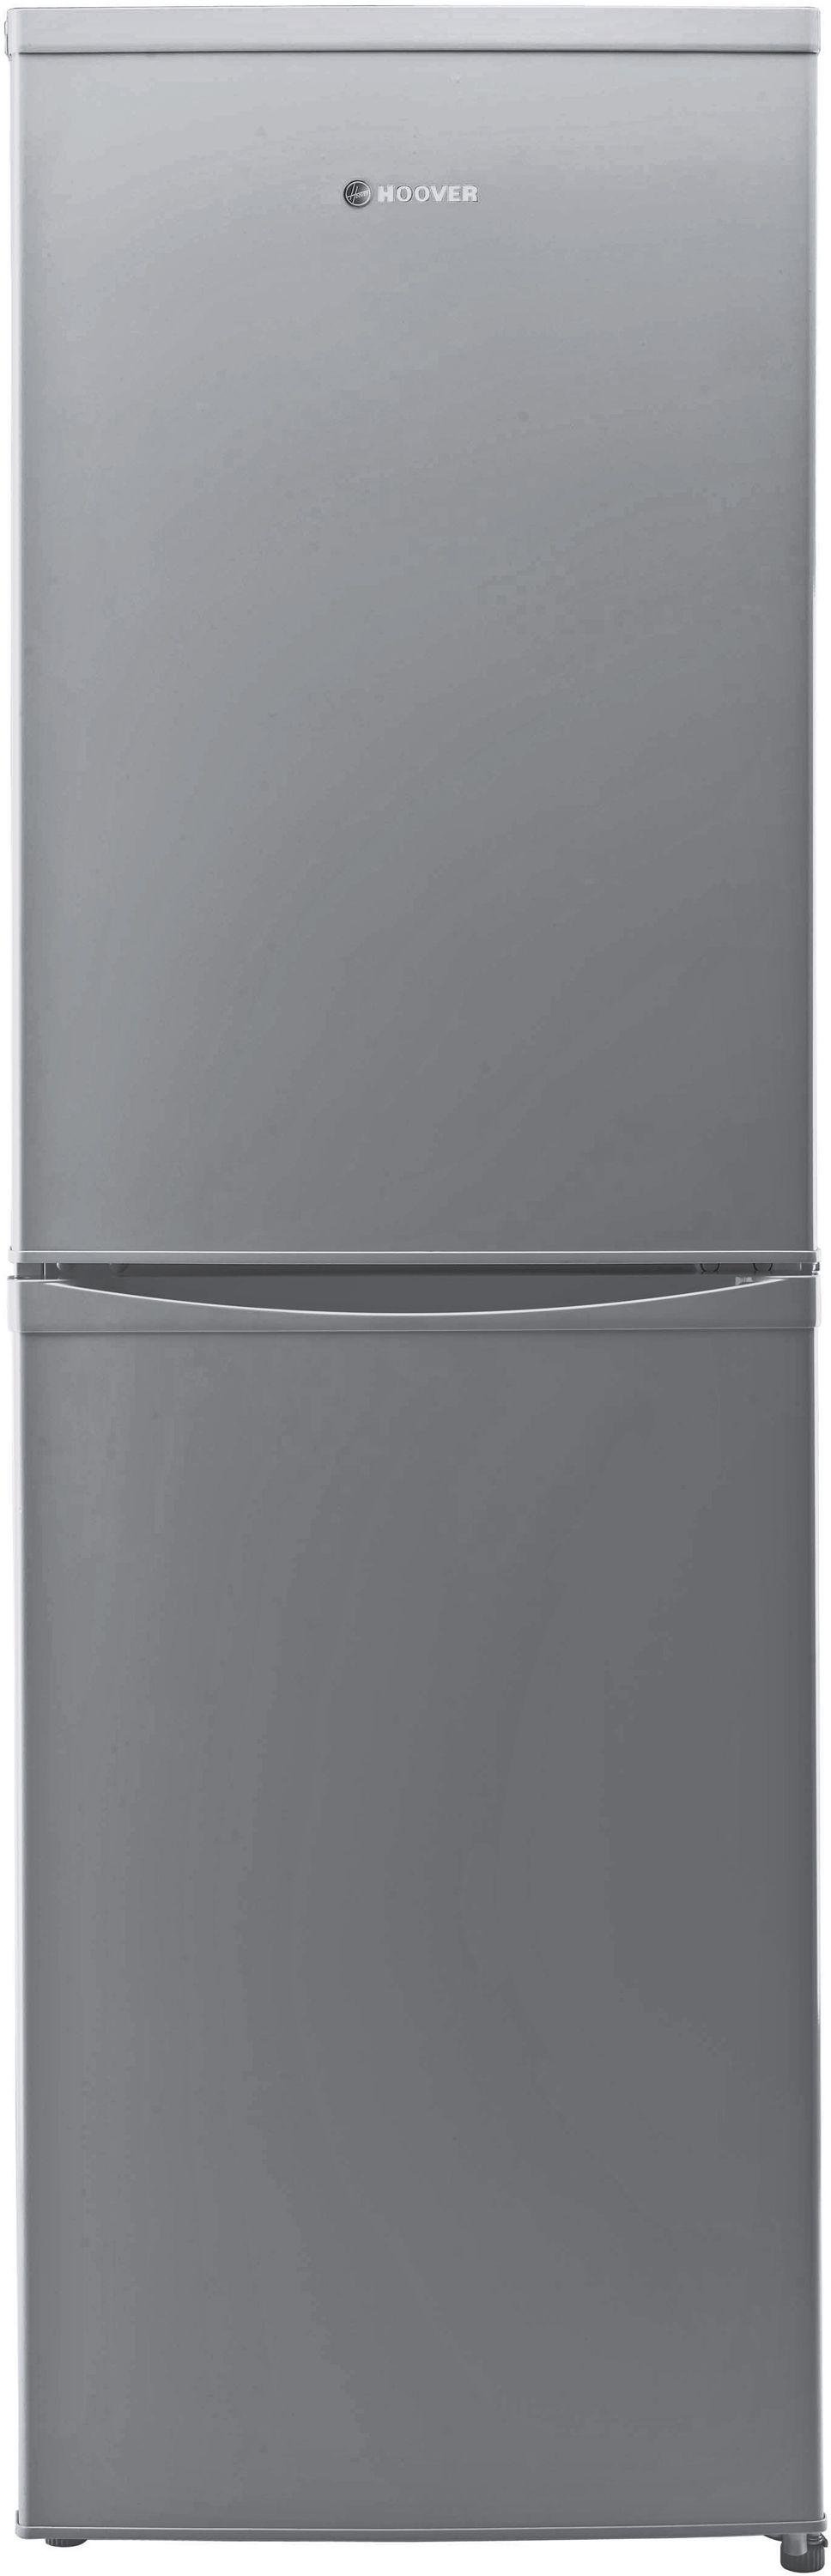 Hoover HVBS5162AK Tall Fridge Freezer - Silver